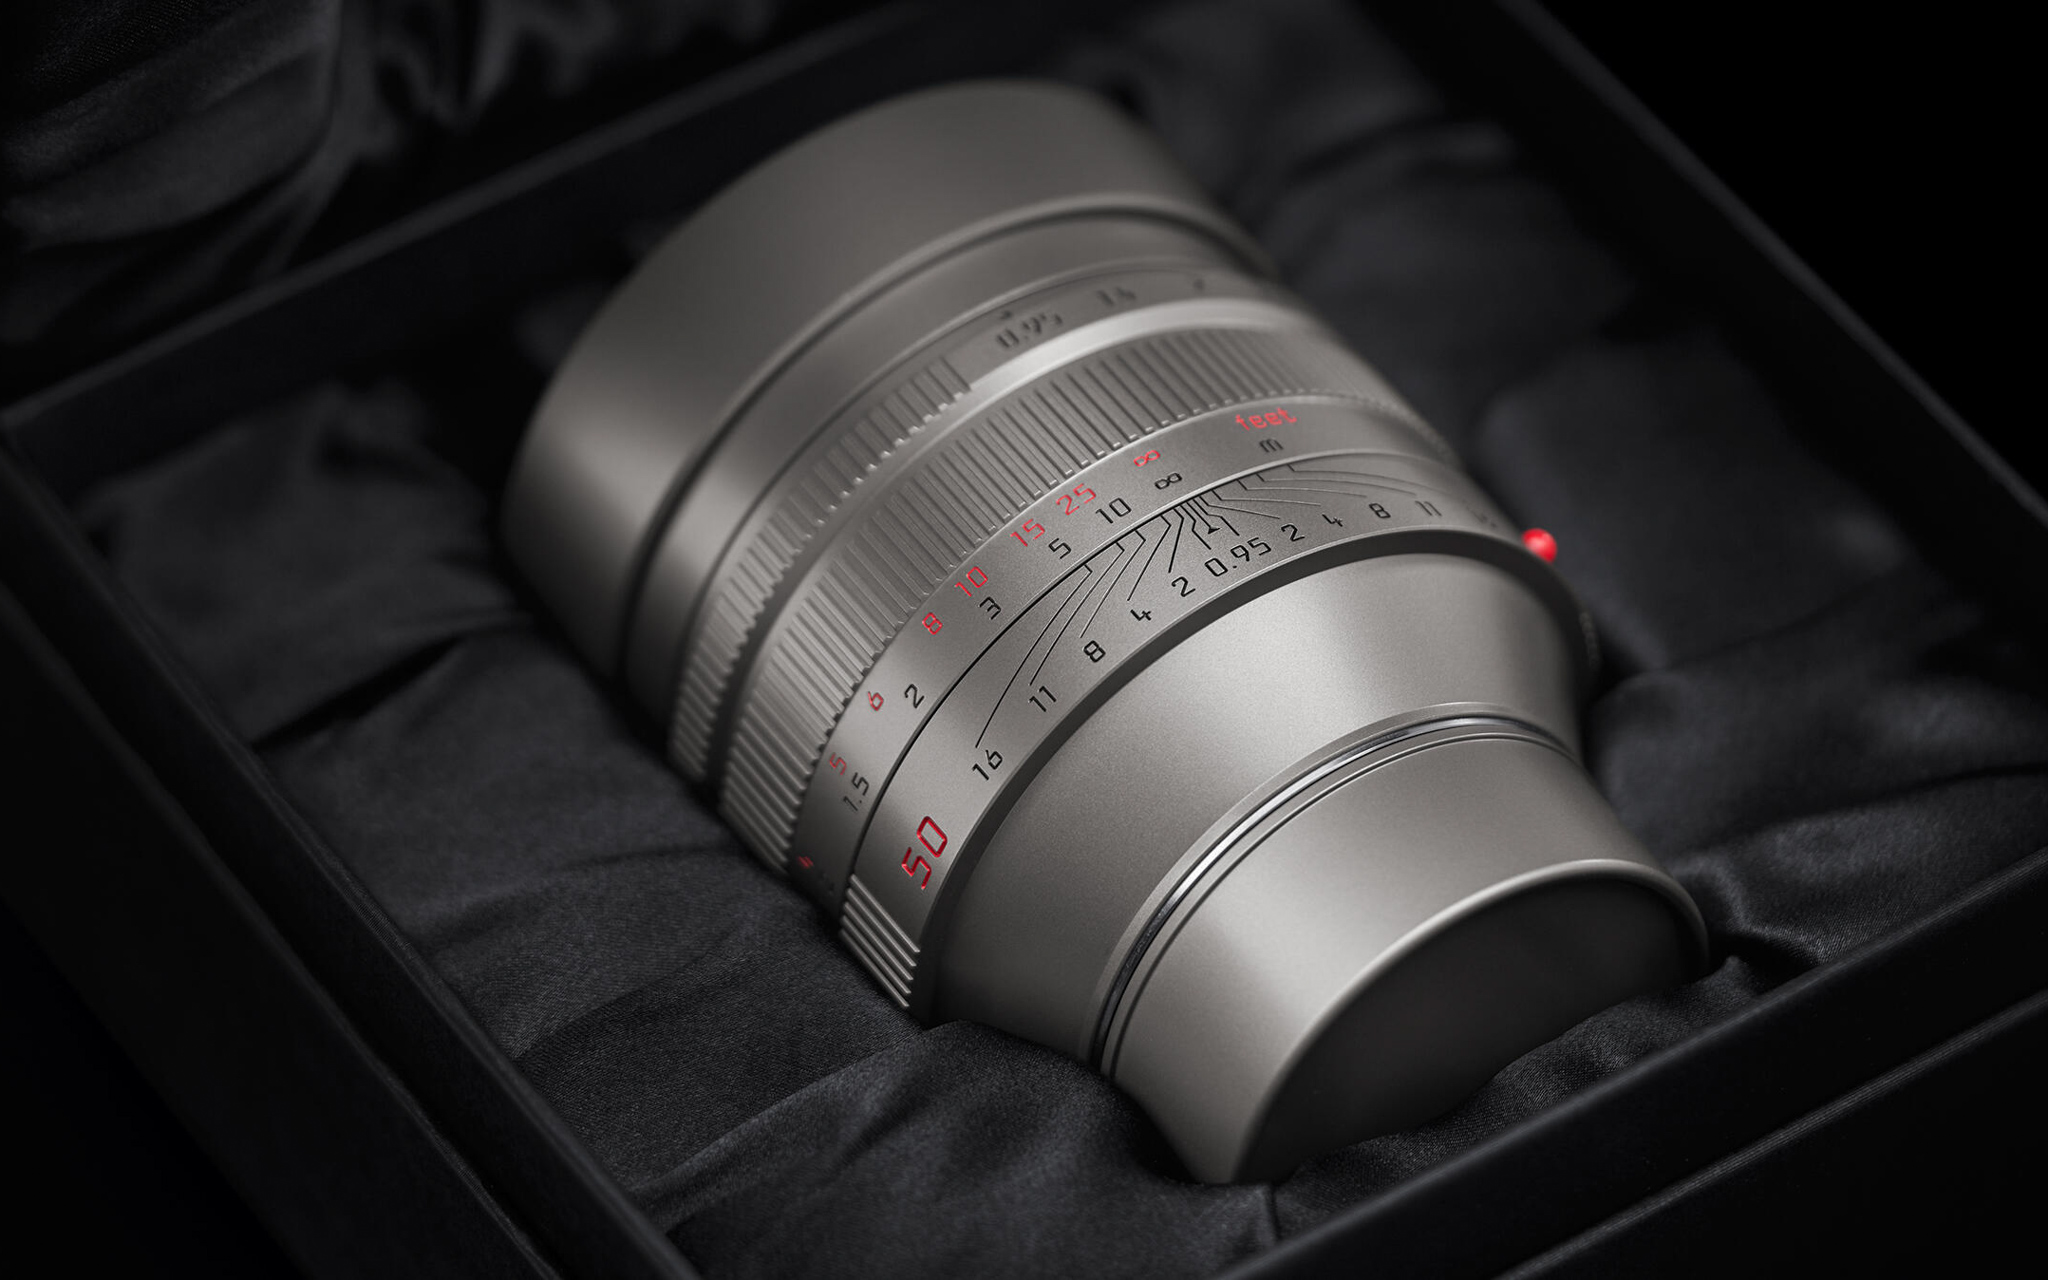 Chiếc ống kính tiêu cự 50mm đắt nhất của Leica ra mắt: Noctilux-M 50mm f/0.95 Titan